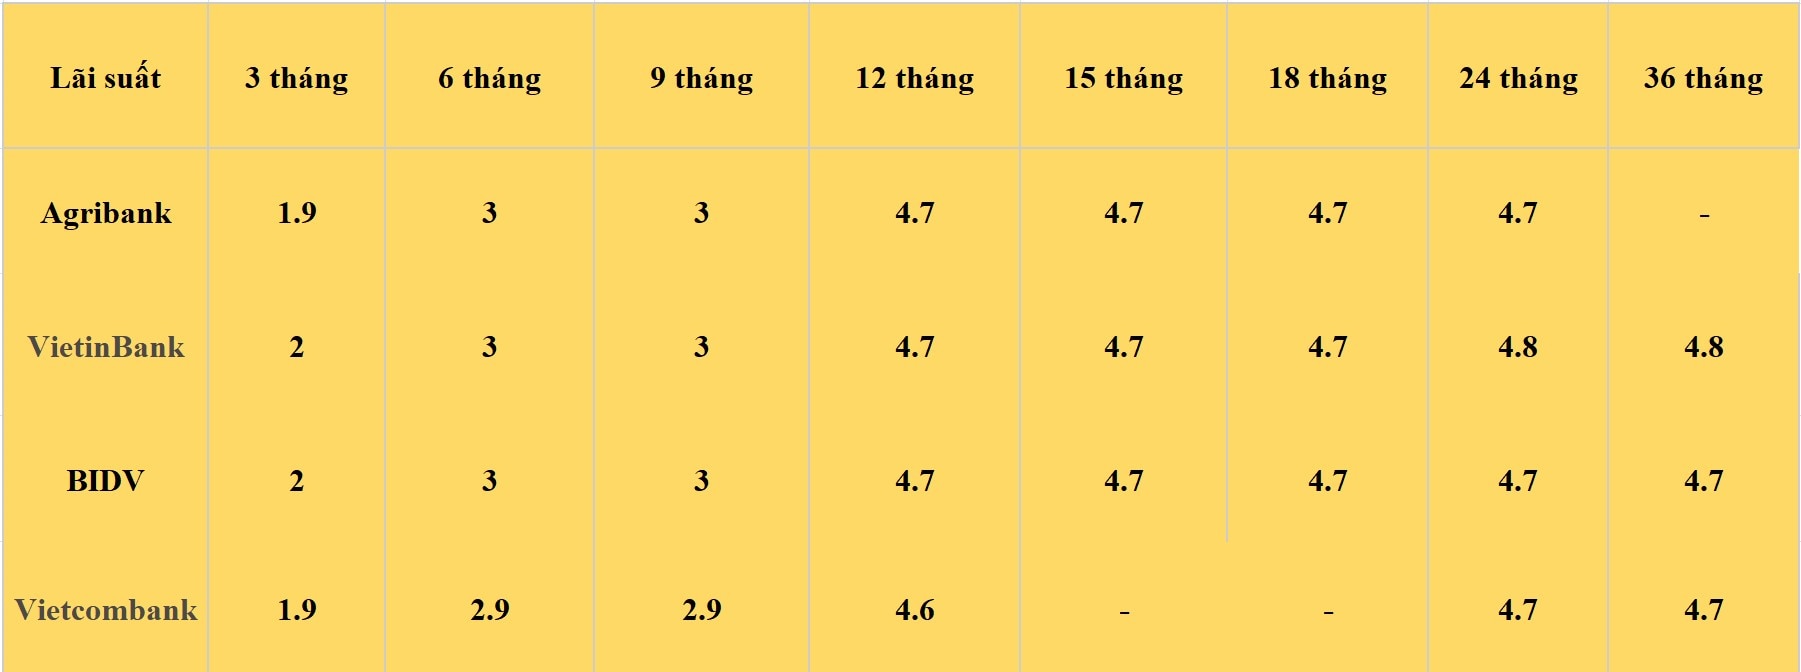 Bảng lãi suất các kỳ hạn tại Vietcombank, Agribank, VietinBank và BIDV. Số liệu ghi nhận ngày 26.4.2024. Đơn vị tính: %/năm. Bảng: Khương Duy  